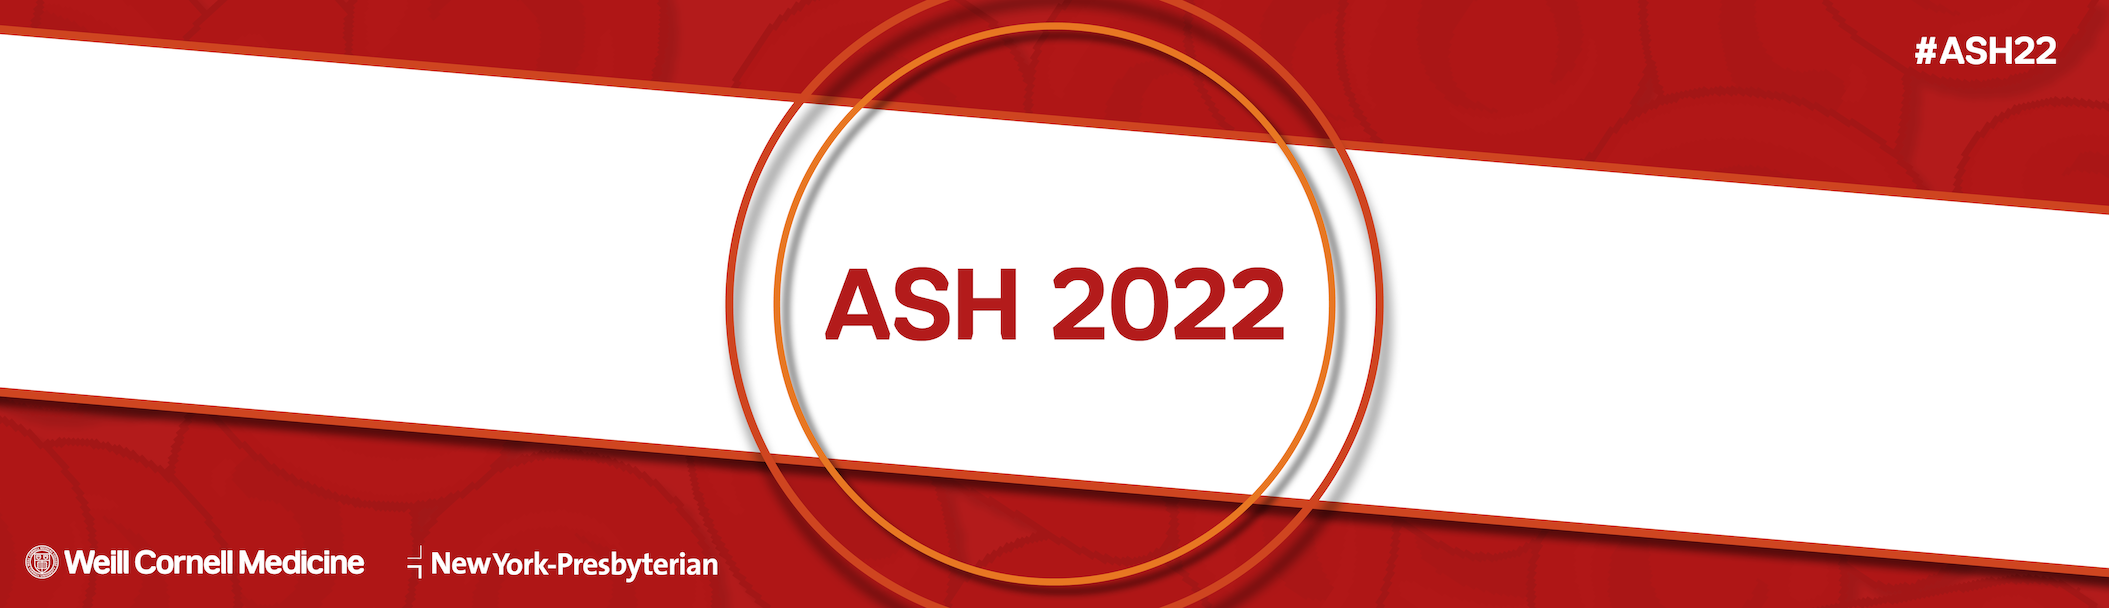 ASH 2022